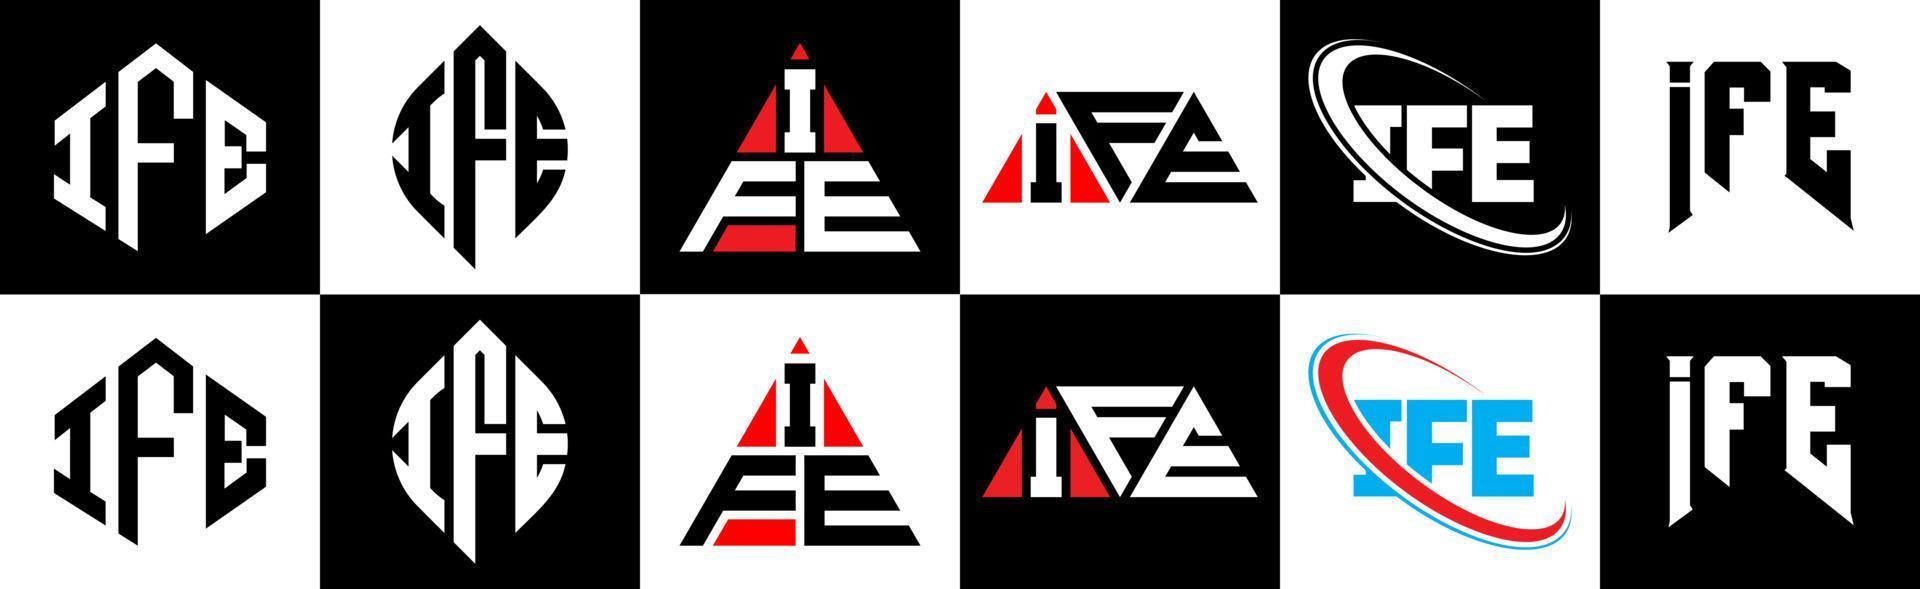 ife brief logo ontwerp in zes stijl. ife veelhoek, cirkel, driehoek, zeshoek, vlak en gemakkelijk stijl met zwart en wit kleur variatie brief logo reeks in een tekengebied. ife minimalistische en klassiek logo vector